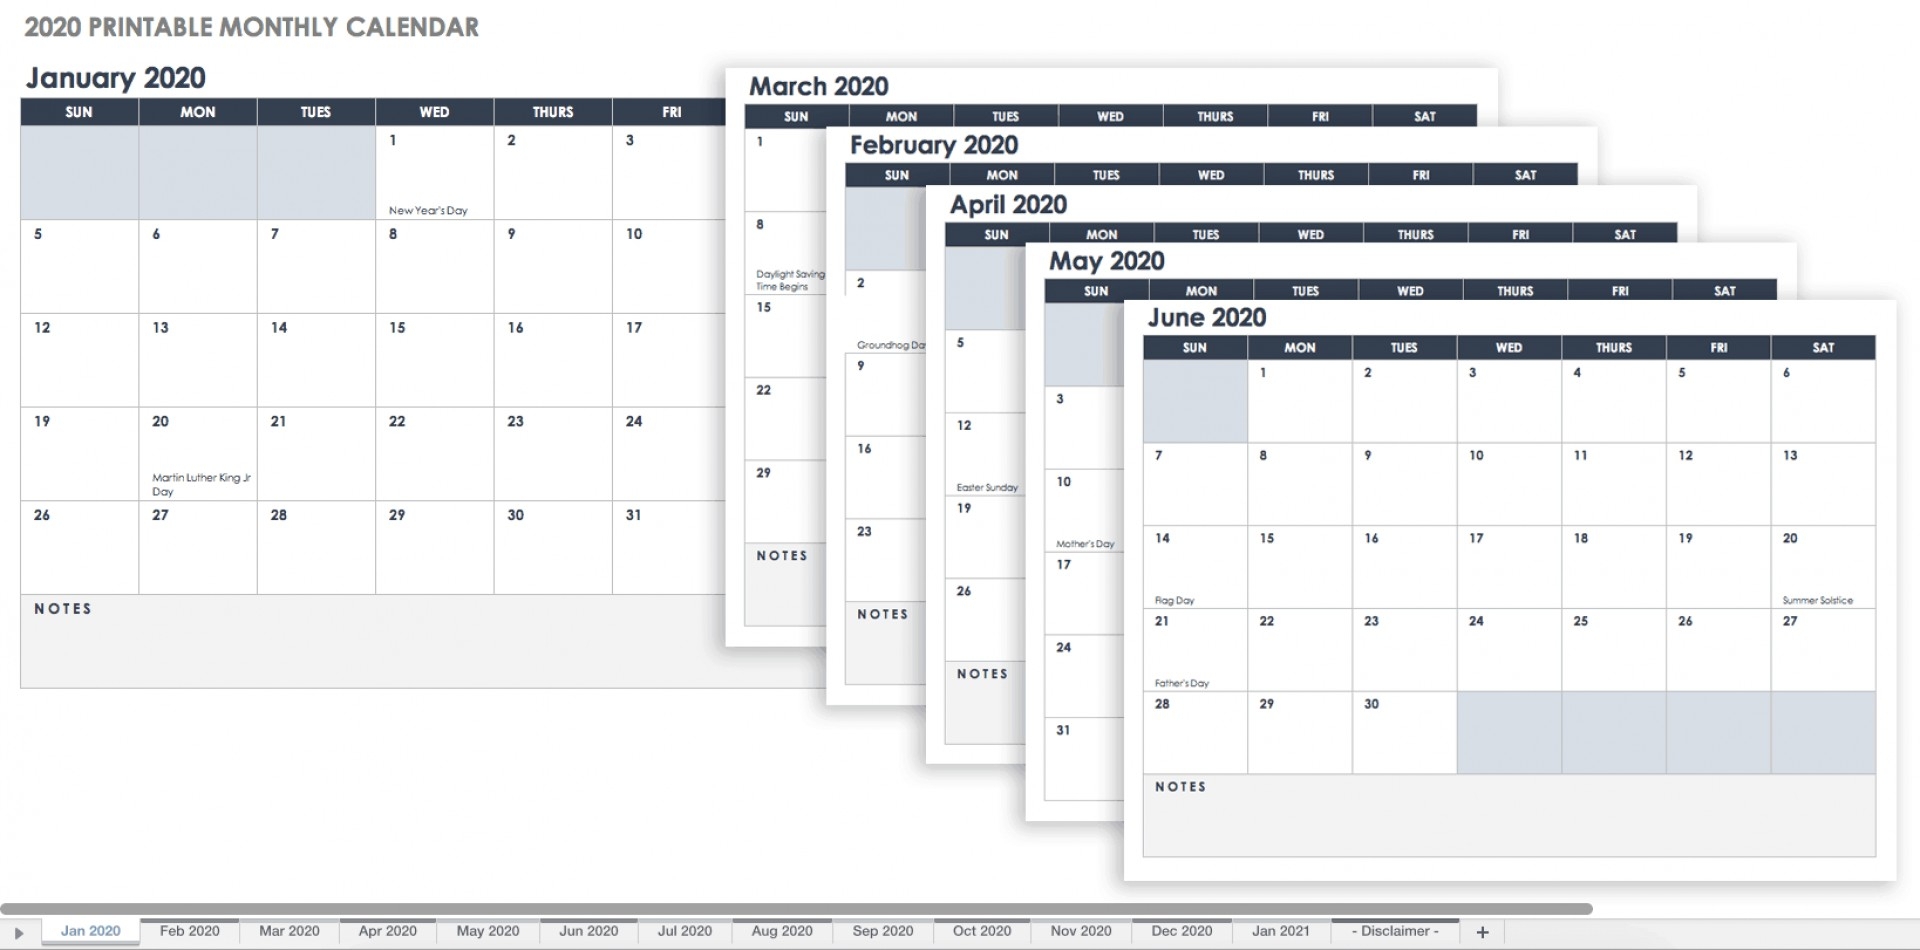 Hra Consulting Monthly Calendar 2020 | Calendar Ideas Design 2020 Calendar Hra Consulting